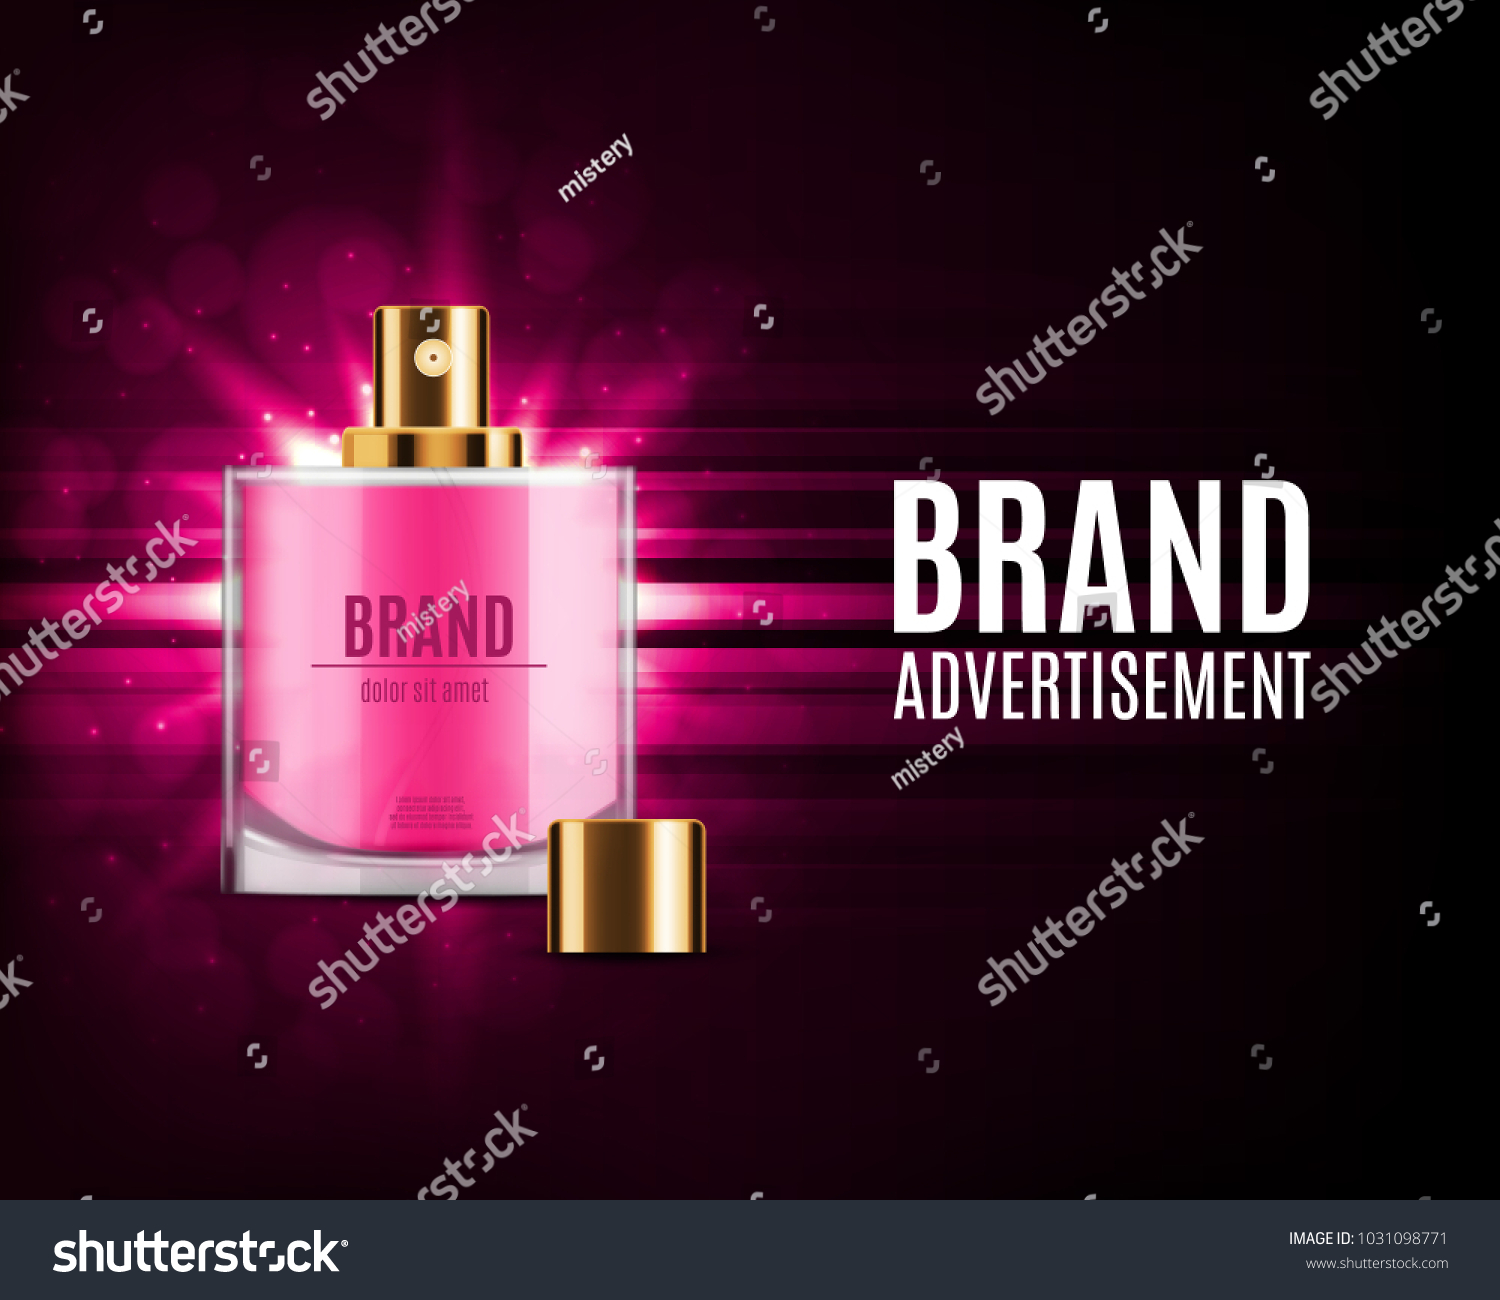 Perfume Ads Template Pink Perfume Bottle Stokovye Izobrazheniya V Hd I Milliony Drugih Stokovyh Fotografij Illyustracij I Vektornyh Izobrazhenij Bez Licenzionnyh Platezhej V Kollekcii Shutterstock Ezhednevno Dobavlyayutsya Tysyachi